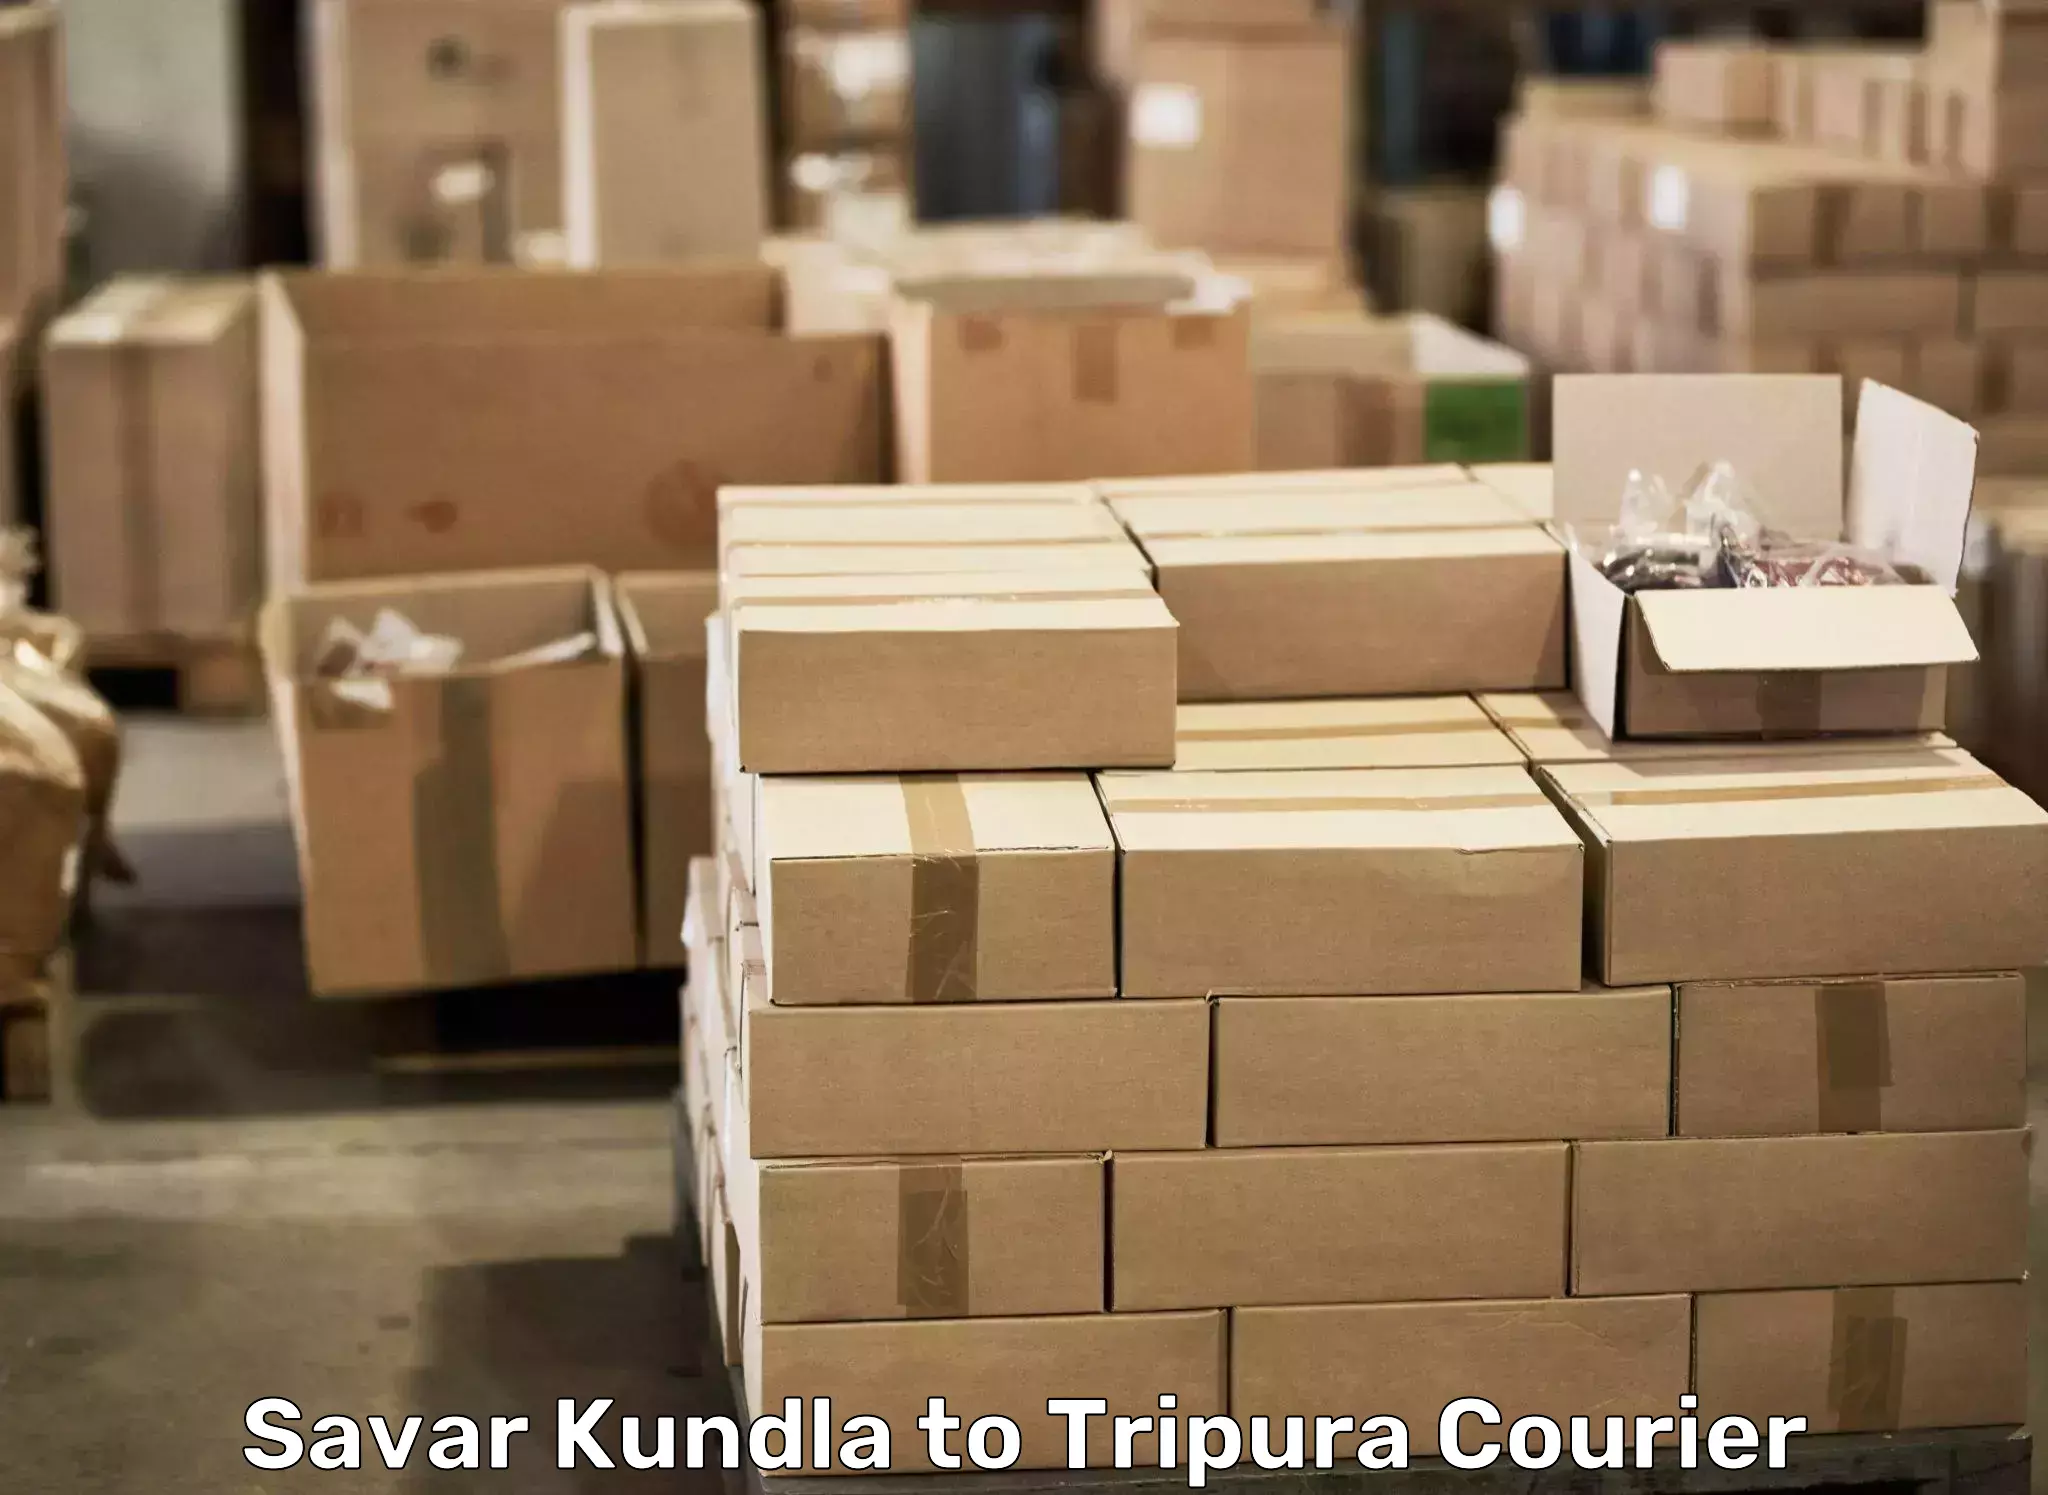 Reliable moving assistance Savar Kundla to Agartala